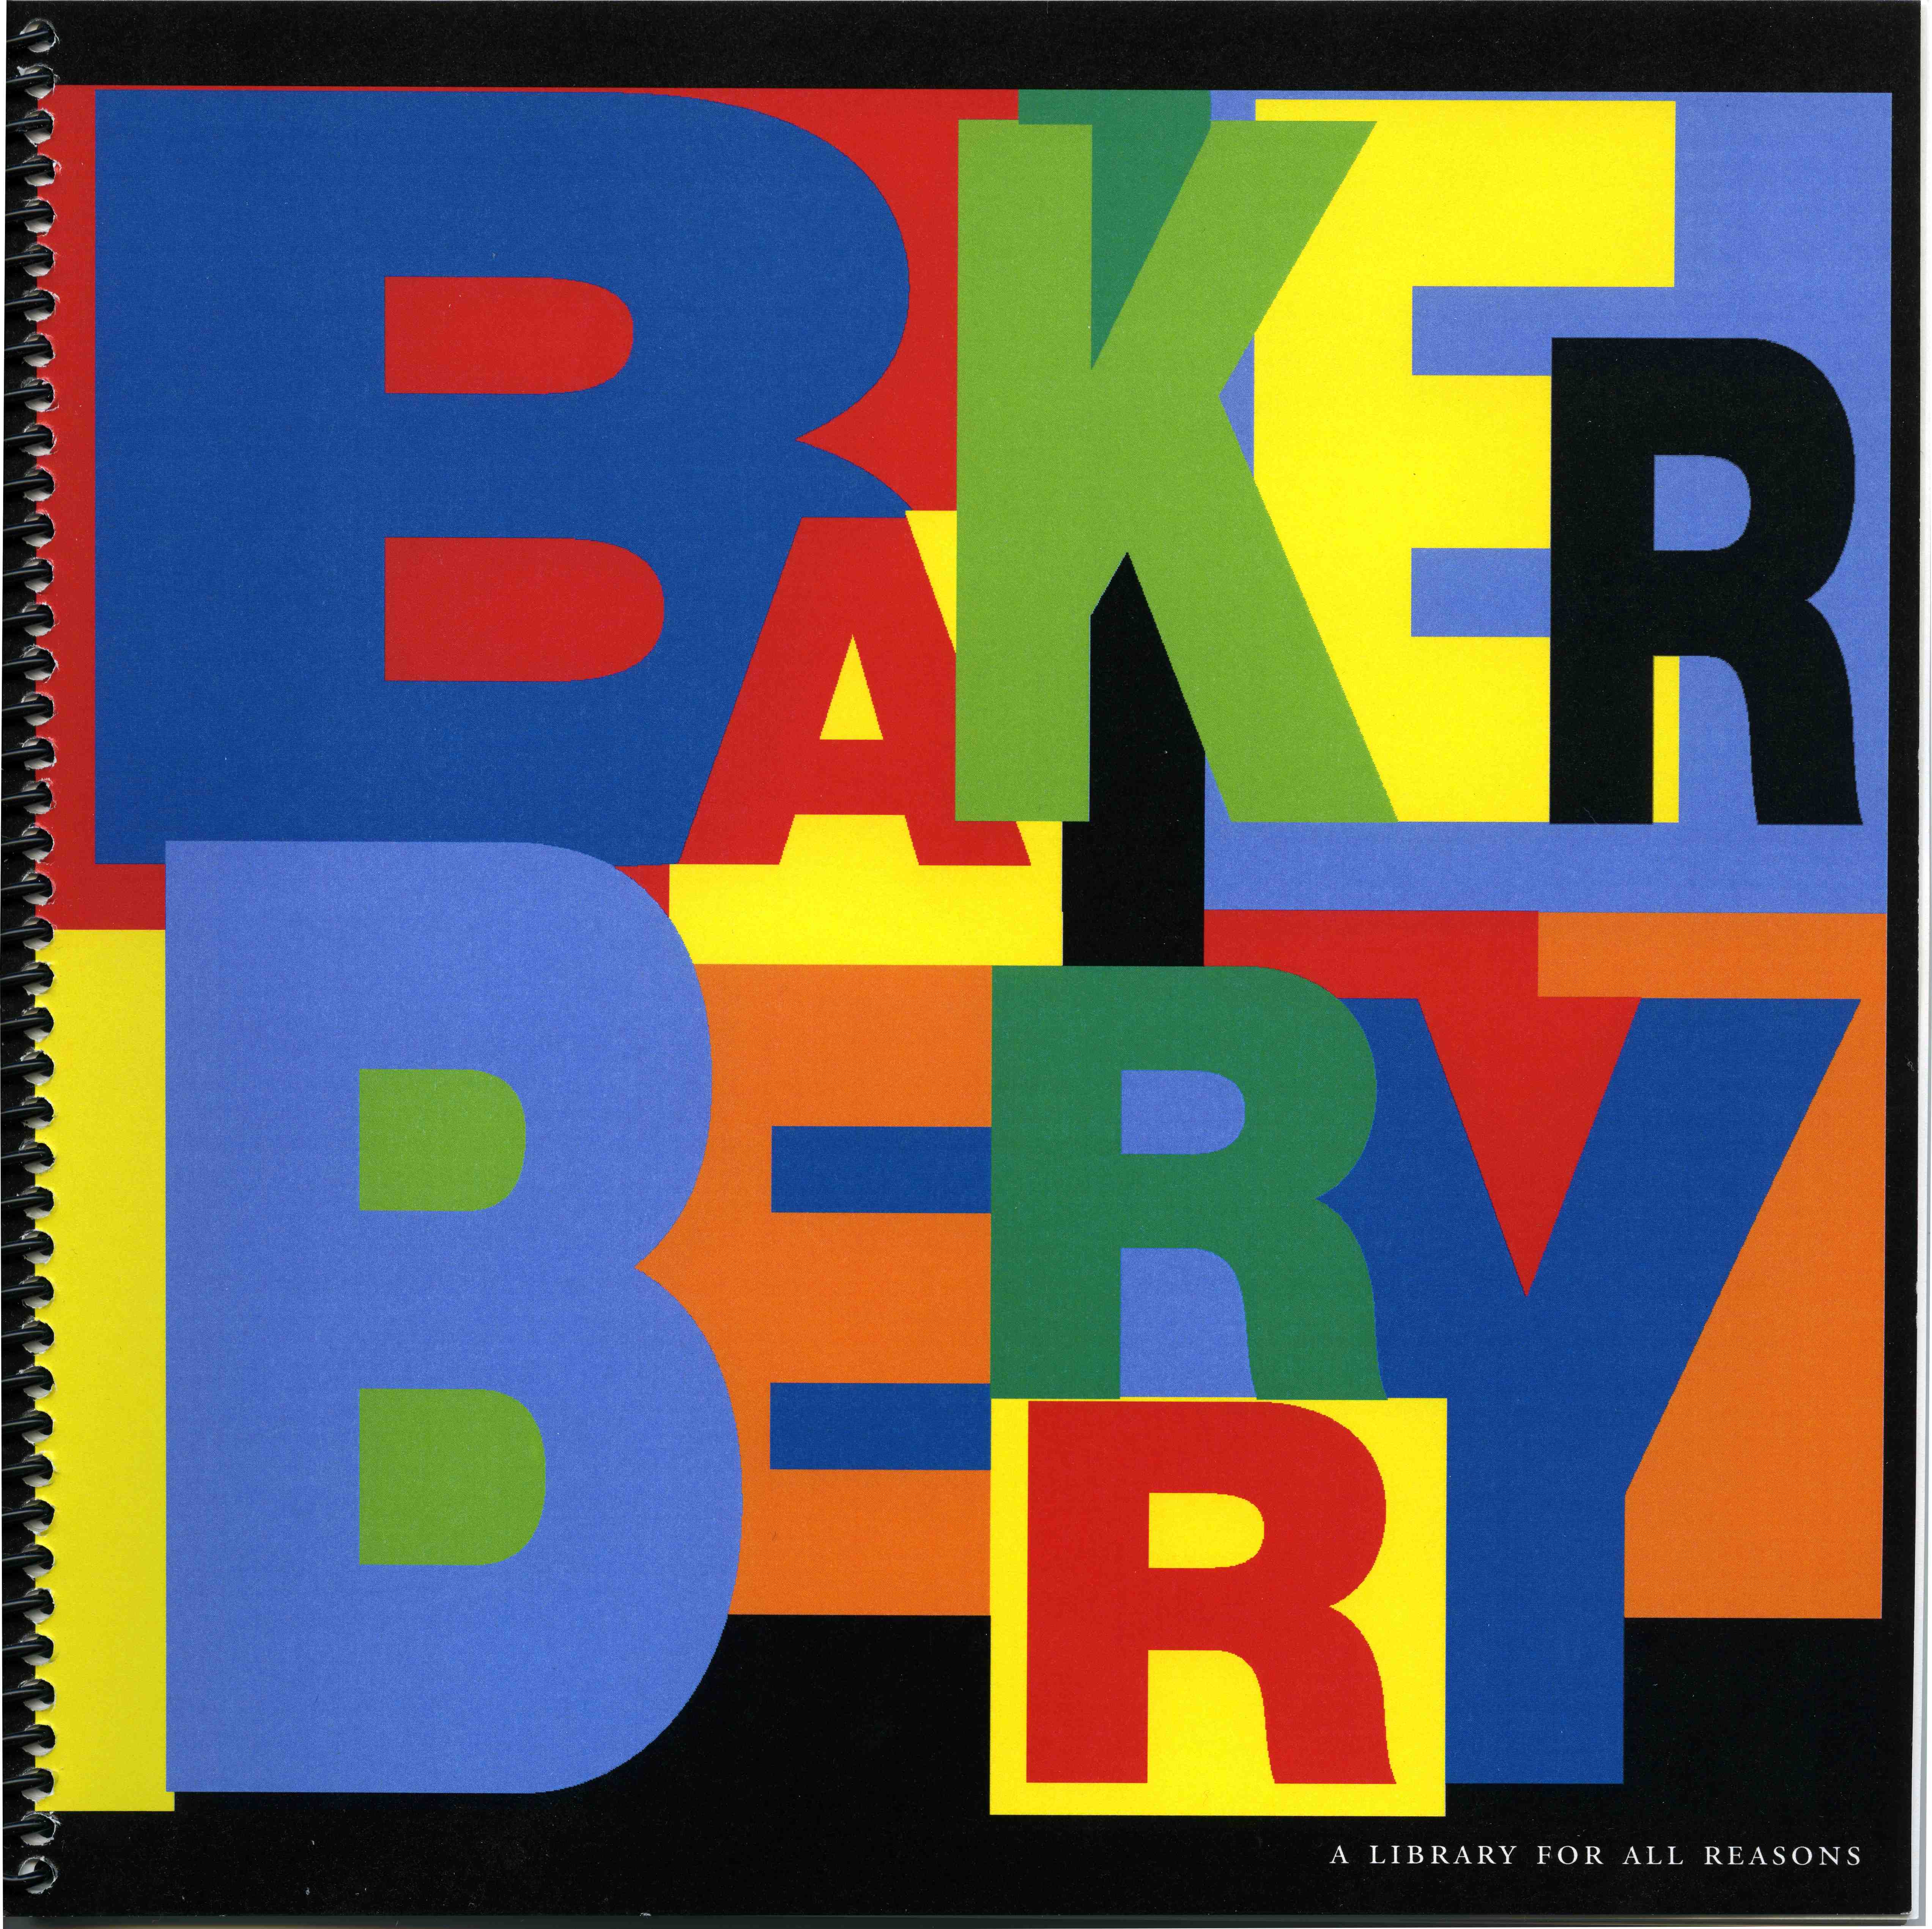 Baker-Berry cover